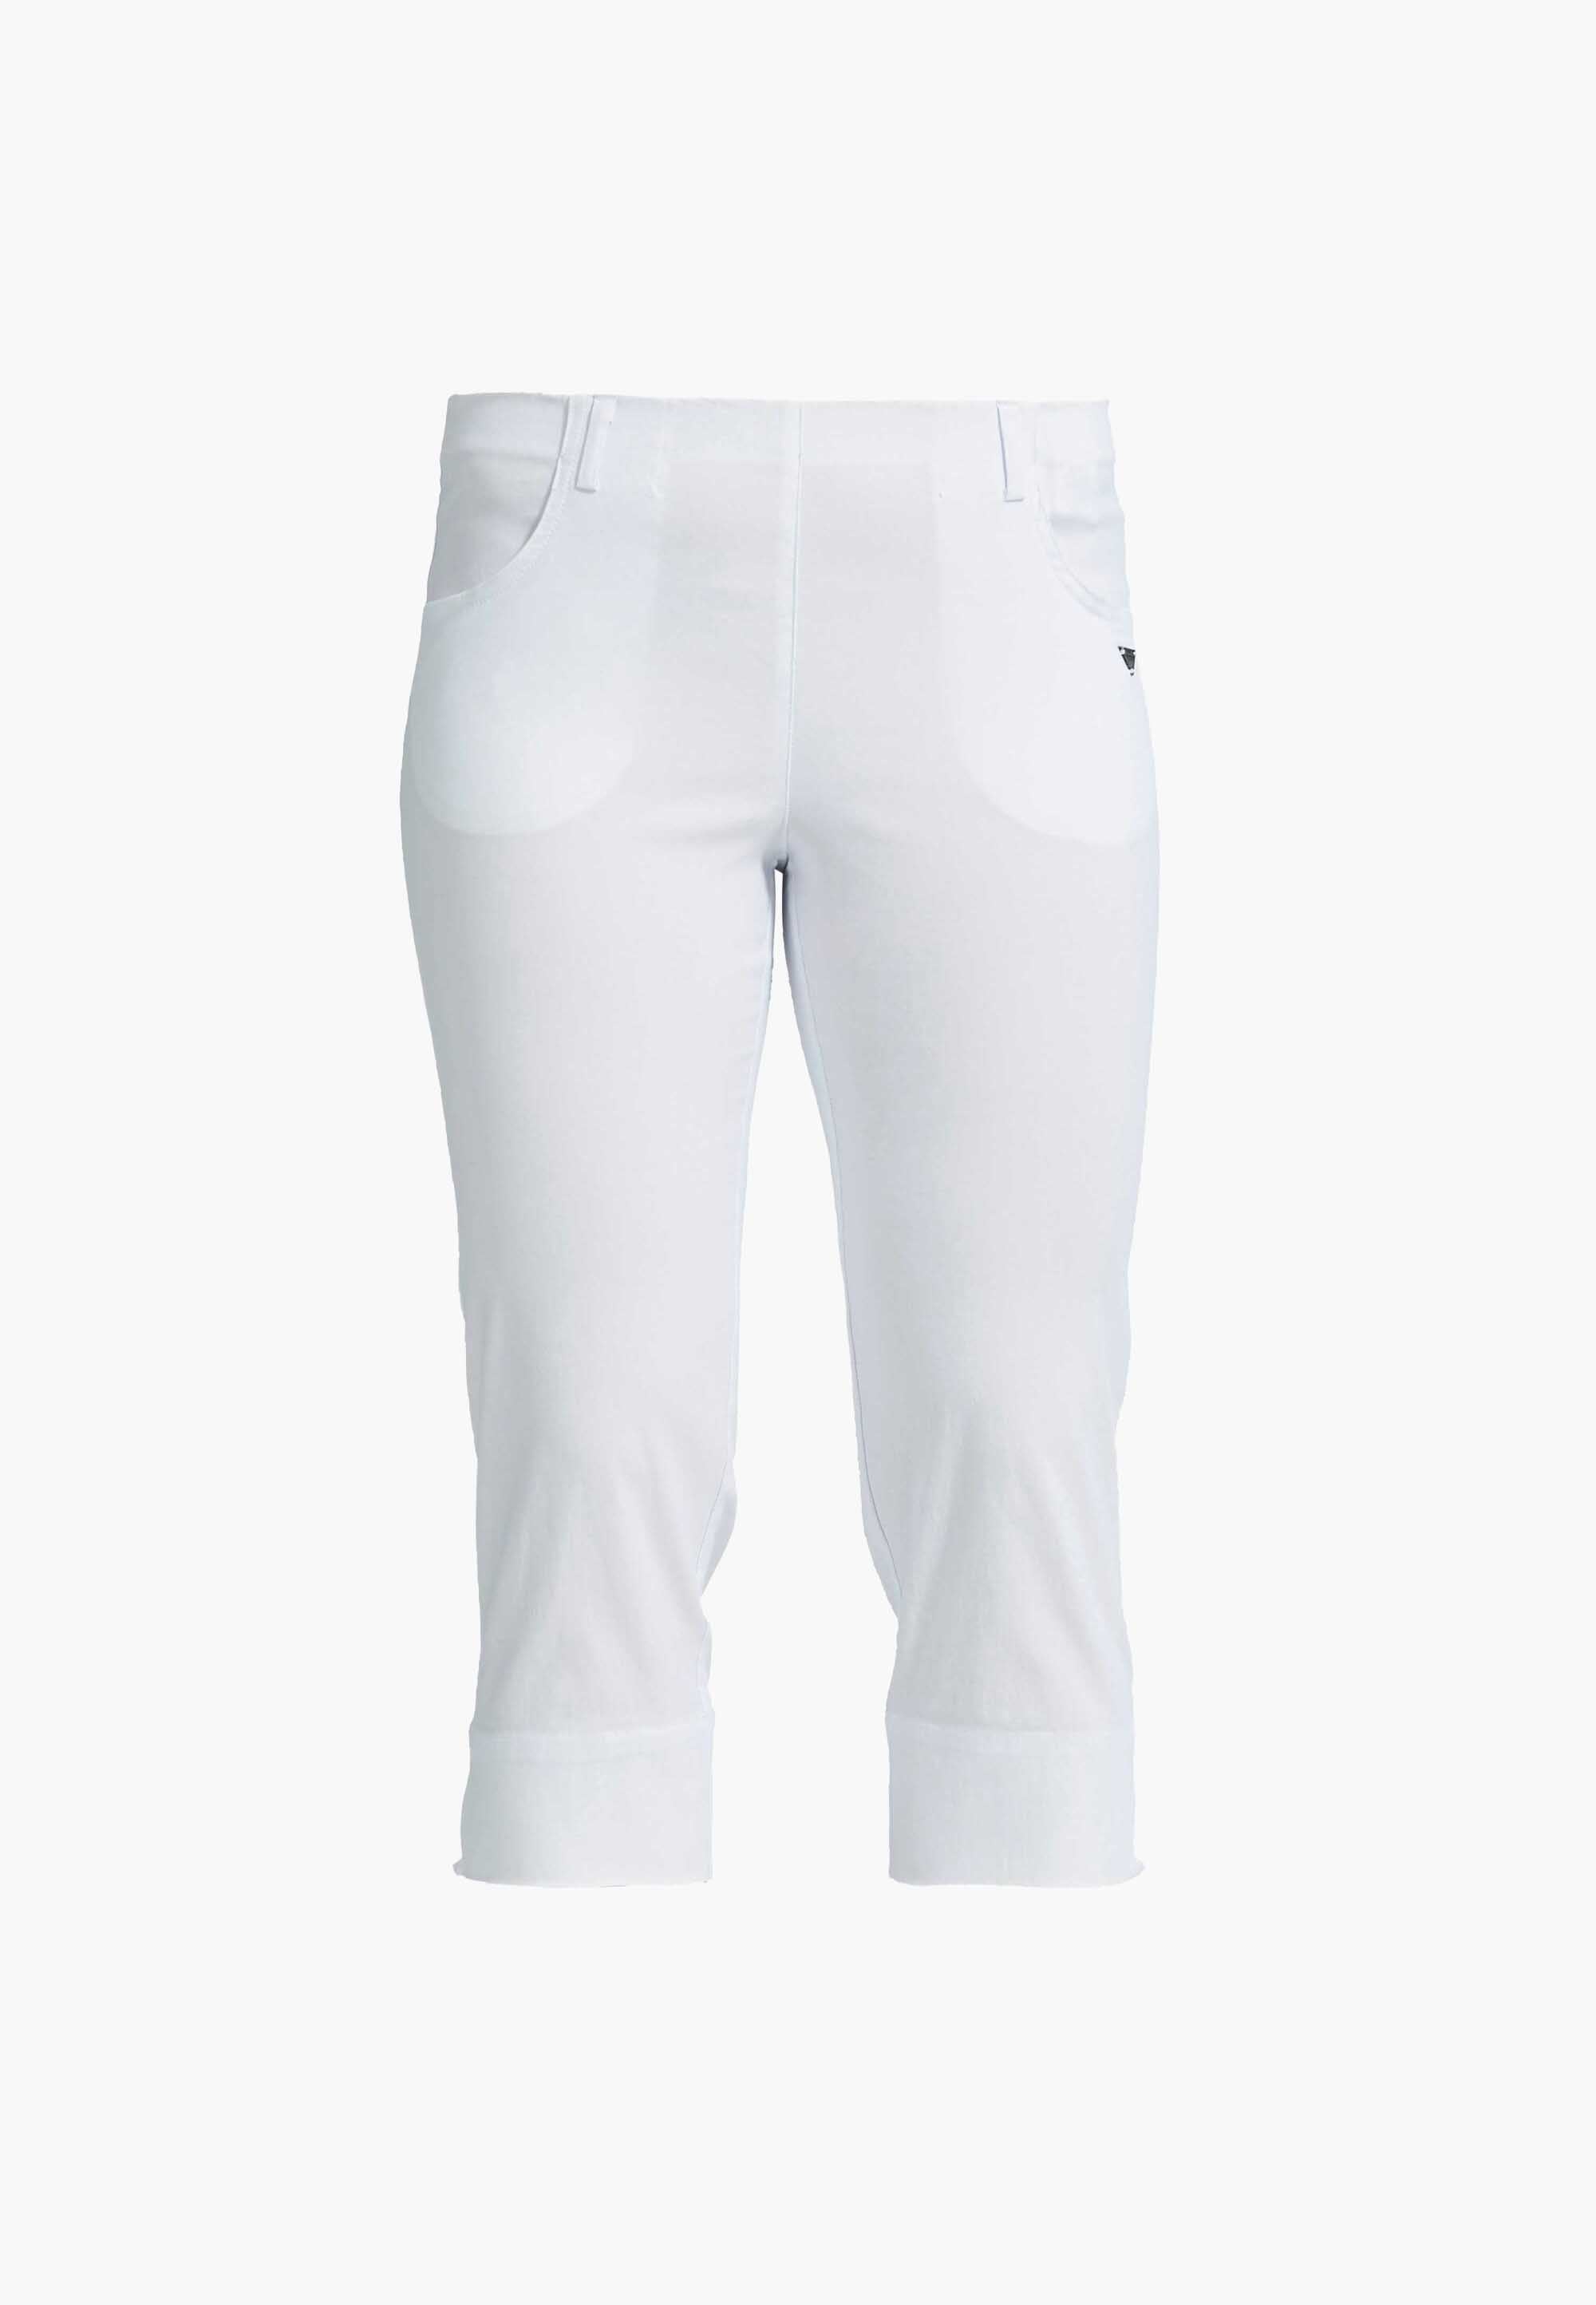 LAURIE  Anabelle Regular Capri Medium Length Trousers REGULAR 10970 White